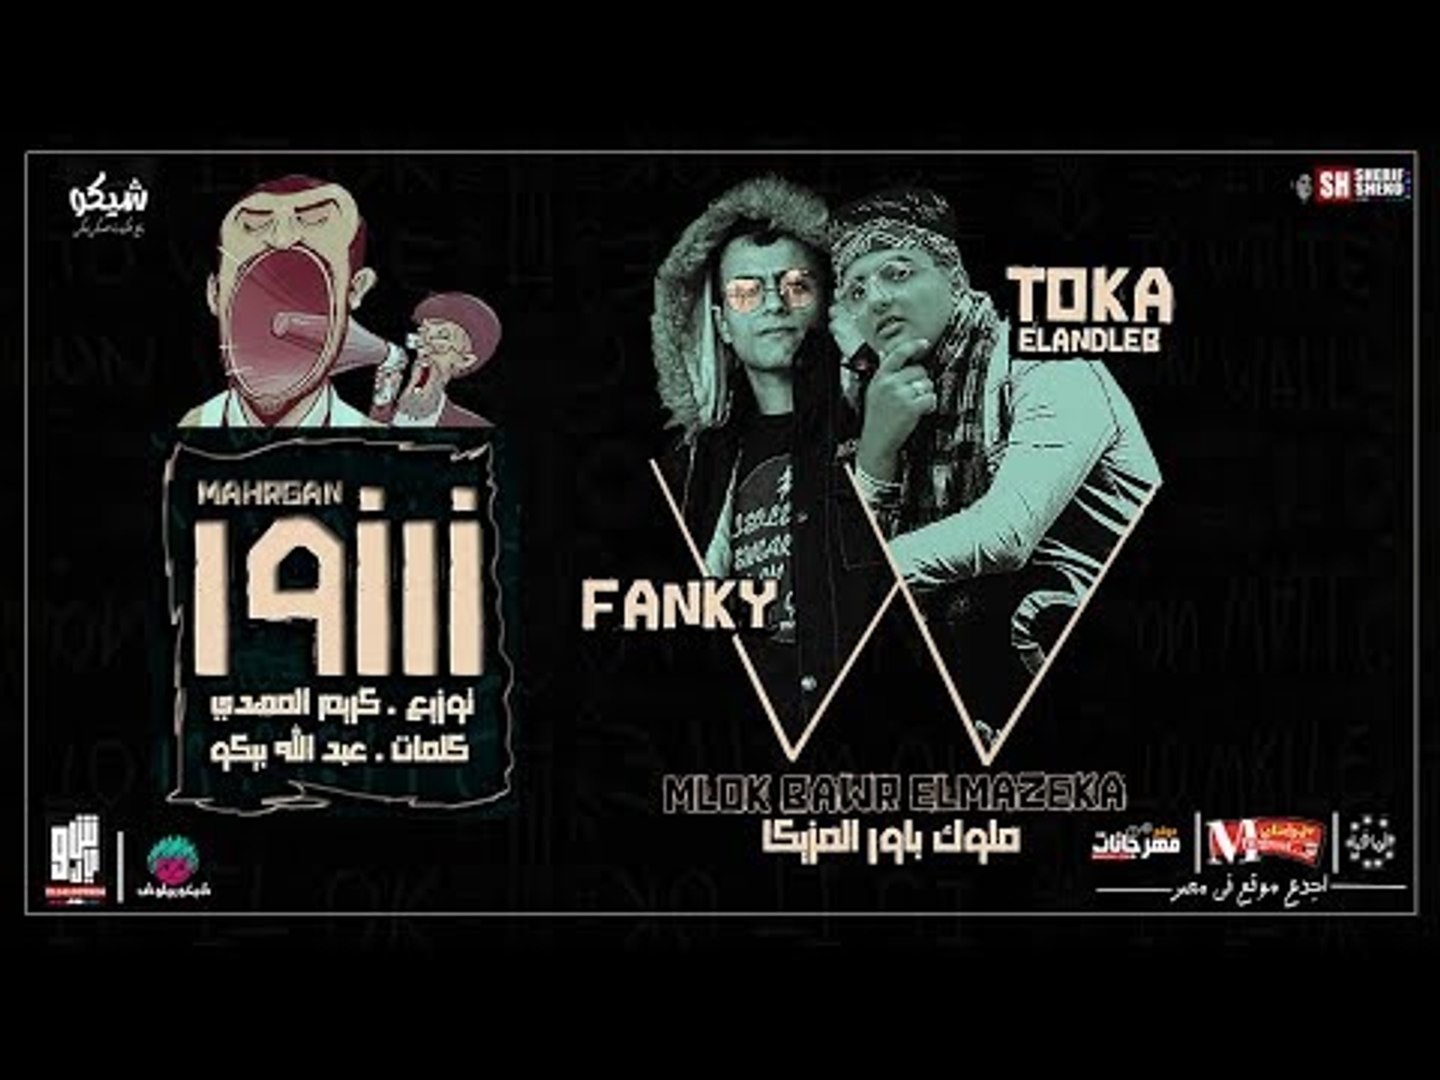 مهرجان زرزور 2018 | غناء توكا و فانكي ملوك باور المزيكا | توزيع كريم المهدي  كلمات بيكو - video Dailymotion